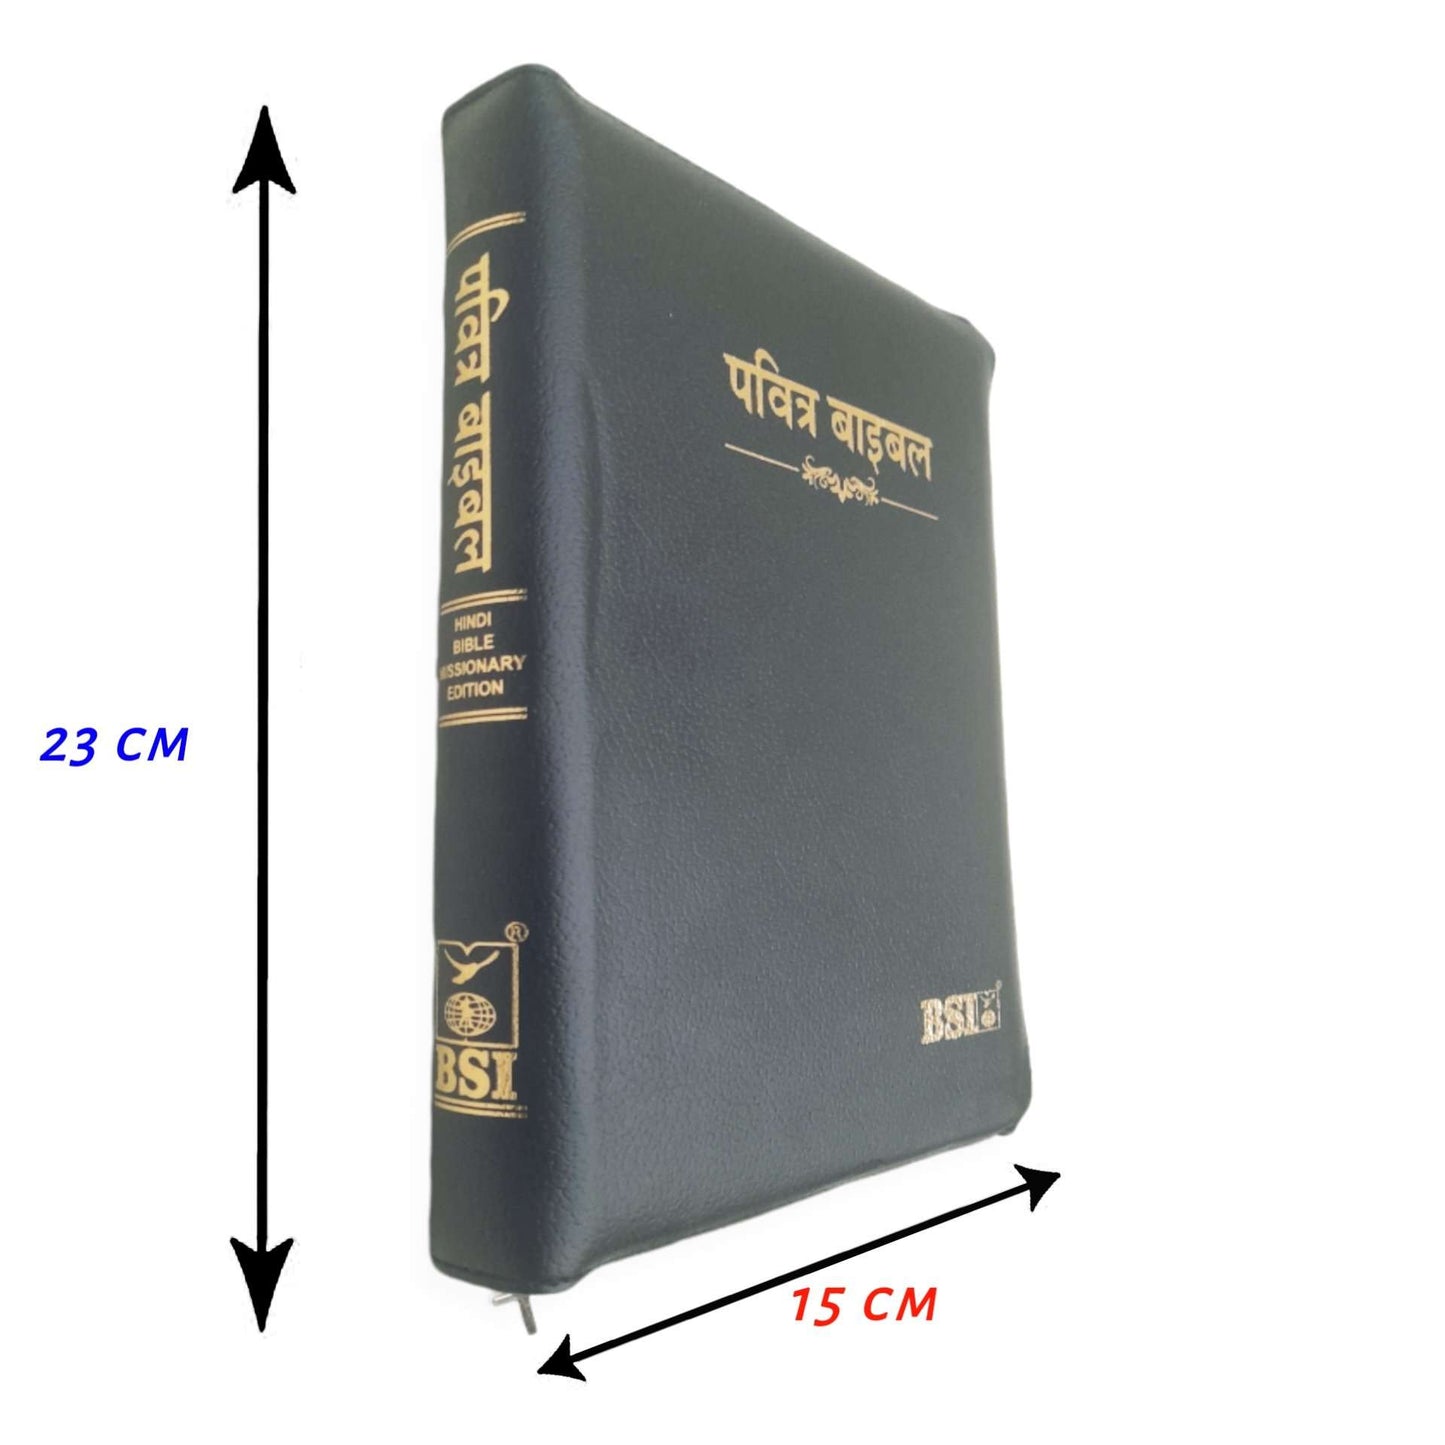 Holy Bible Hindi Index/Zip Missionary Regular Edition Vinyl , 2022 Hindi New Edition Bible